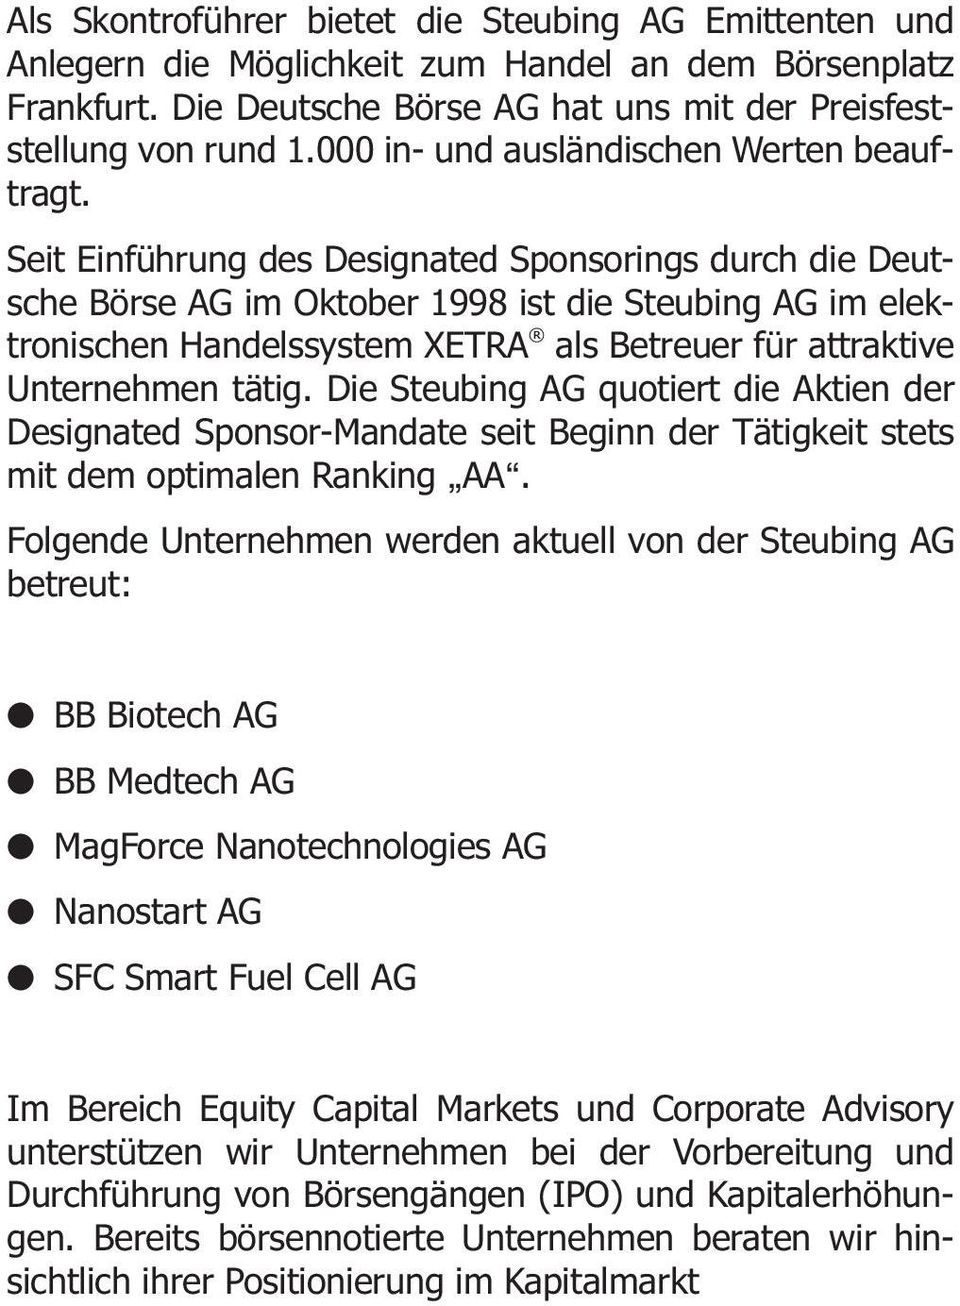 Seit Einführung des Designated Sponsorings durch die Deutsche Börse AG im Oktober 1998 ist die Steubing AG im elektronischen Handelssystem XETRA als Betreuer für attraktive Unternehmen tätig.